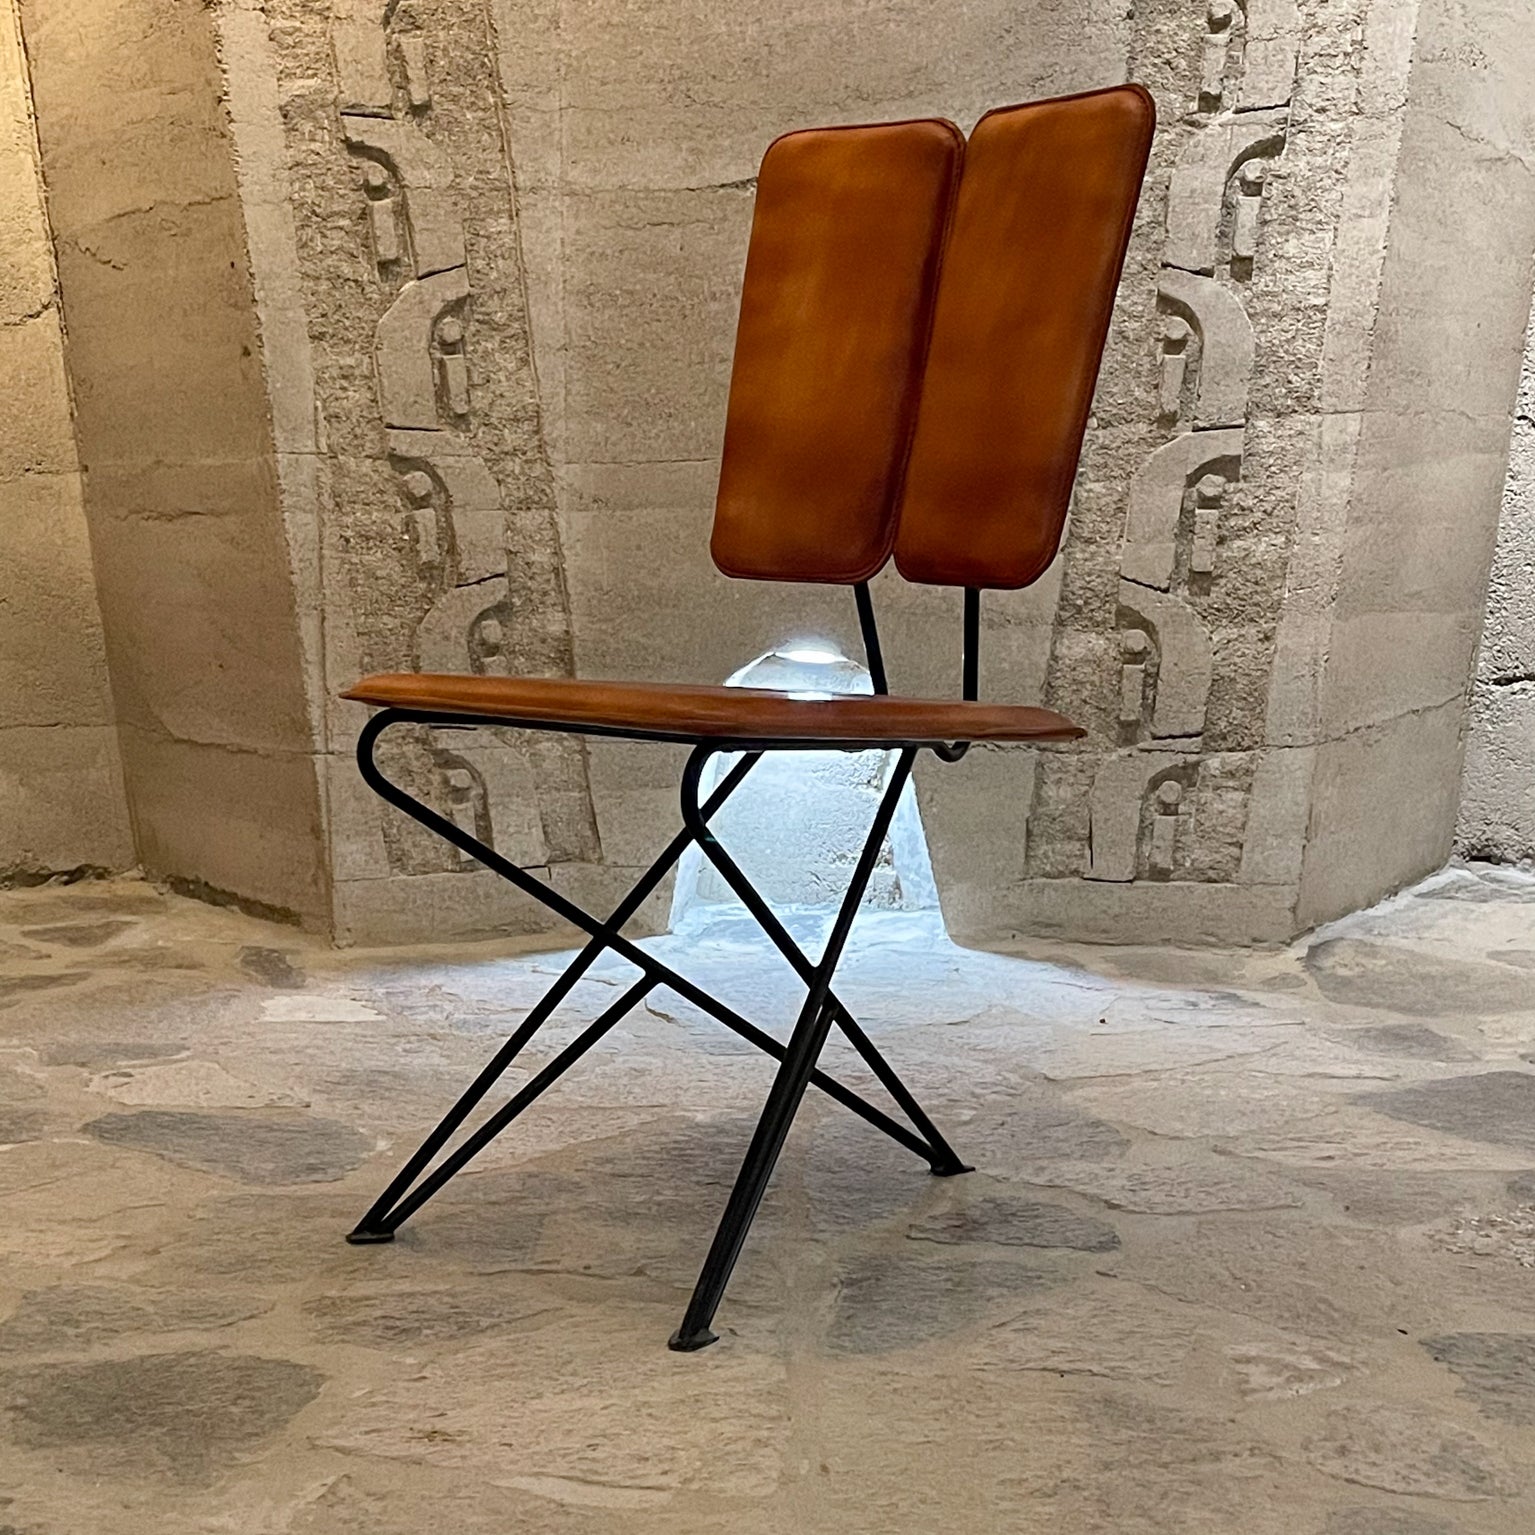 Pablex Iron & Leather Tripod Chair Pablo Romo für AMBIANIC inspiriert von der Jahrhundertmitte.
Maßgefertigter Dreibeinstuhl mit Leder- und Bronzedetails.
Gefertigt aus Eisen mit Lederkissen und einem dicken Peitschenstichmuster.
Bildhauerisch